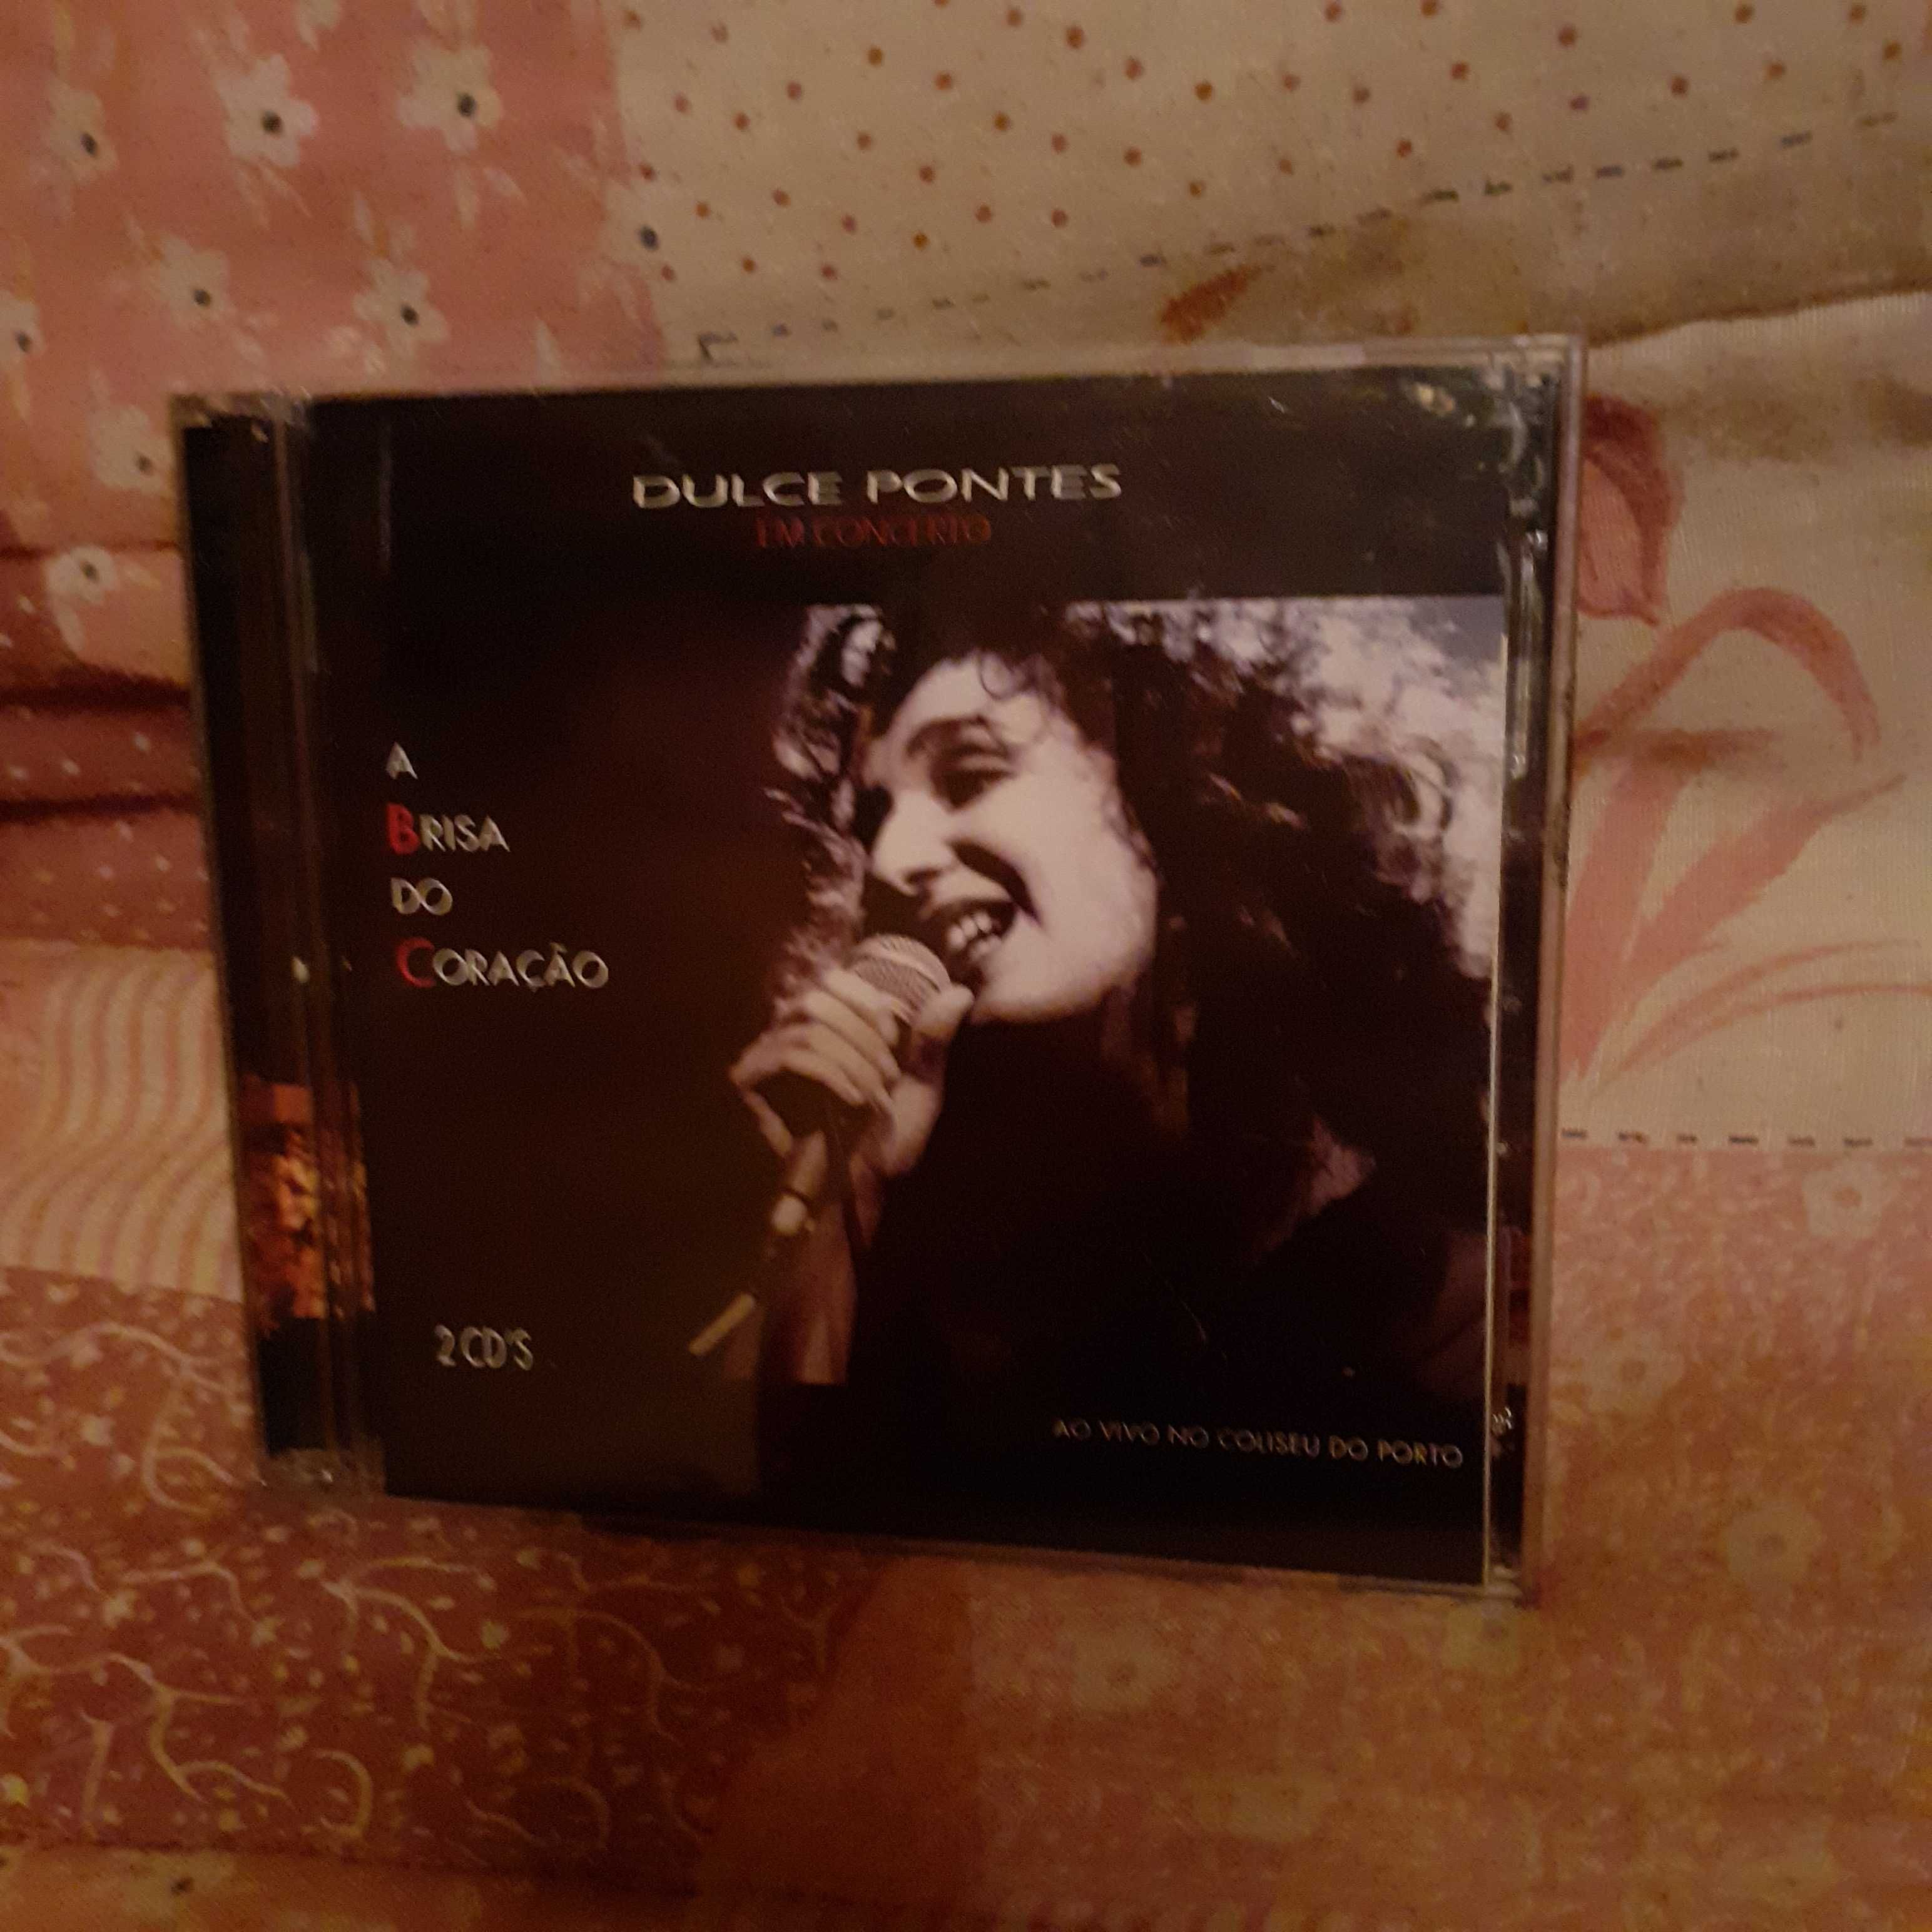 CD Dulce Pontes-O Primeiro Canto-2 CD´SA Brisa do Coração (ORIGINAL)